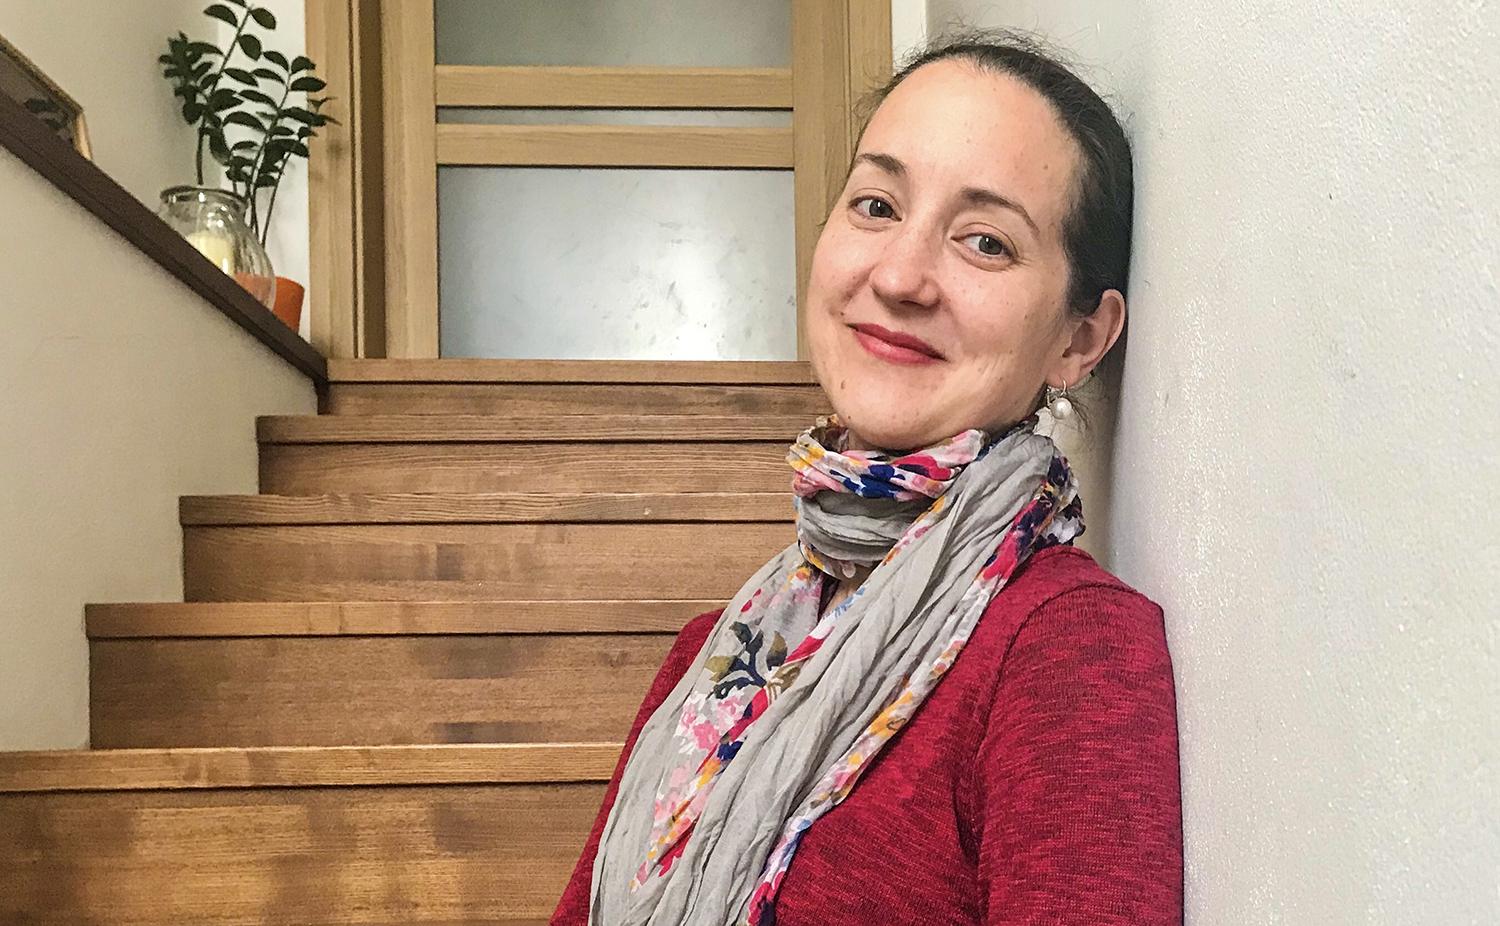 Dirigentka Barbora Brosová Lipková: Dirigovanie prinieslo do môjho života veľa slobody